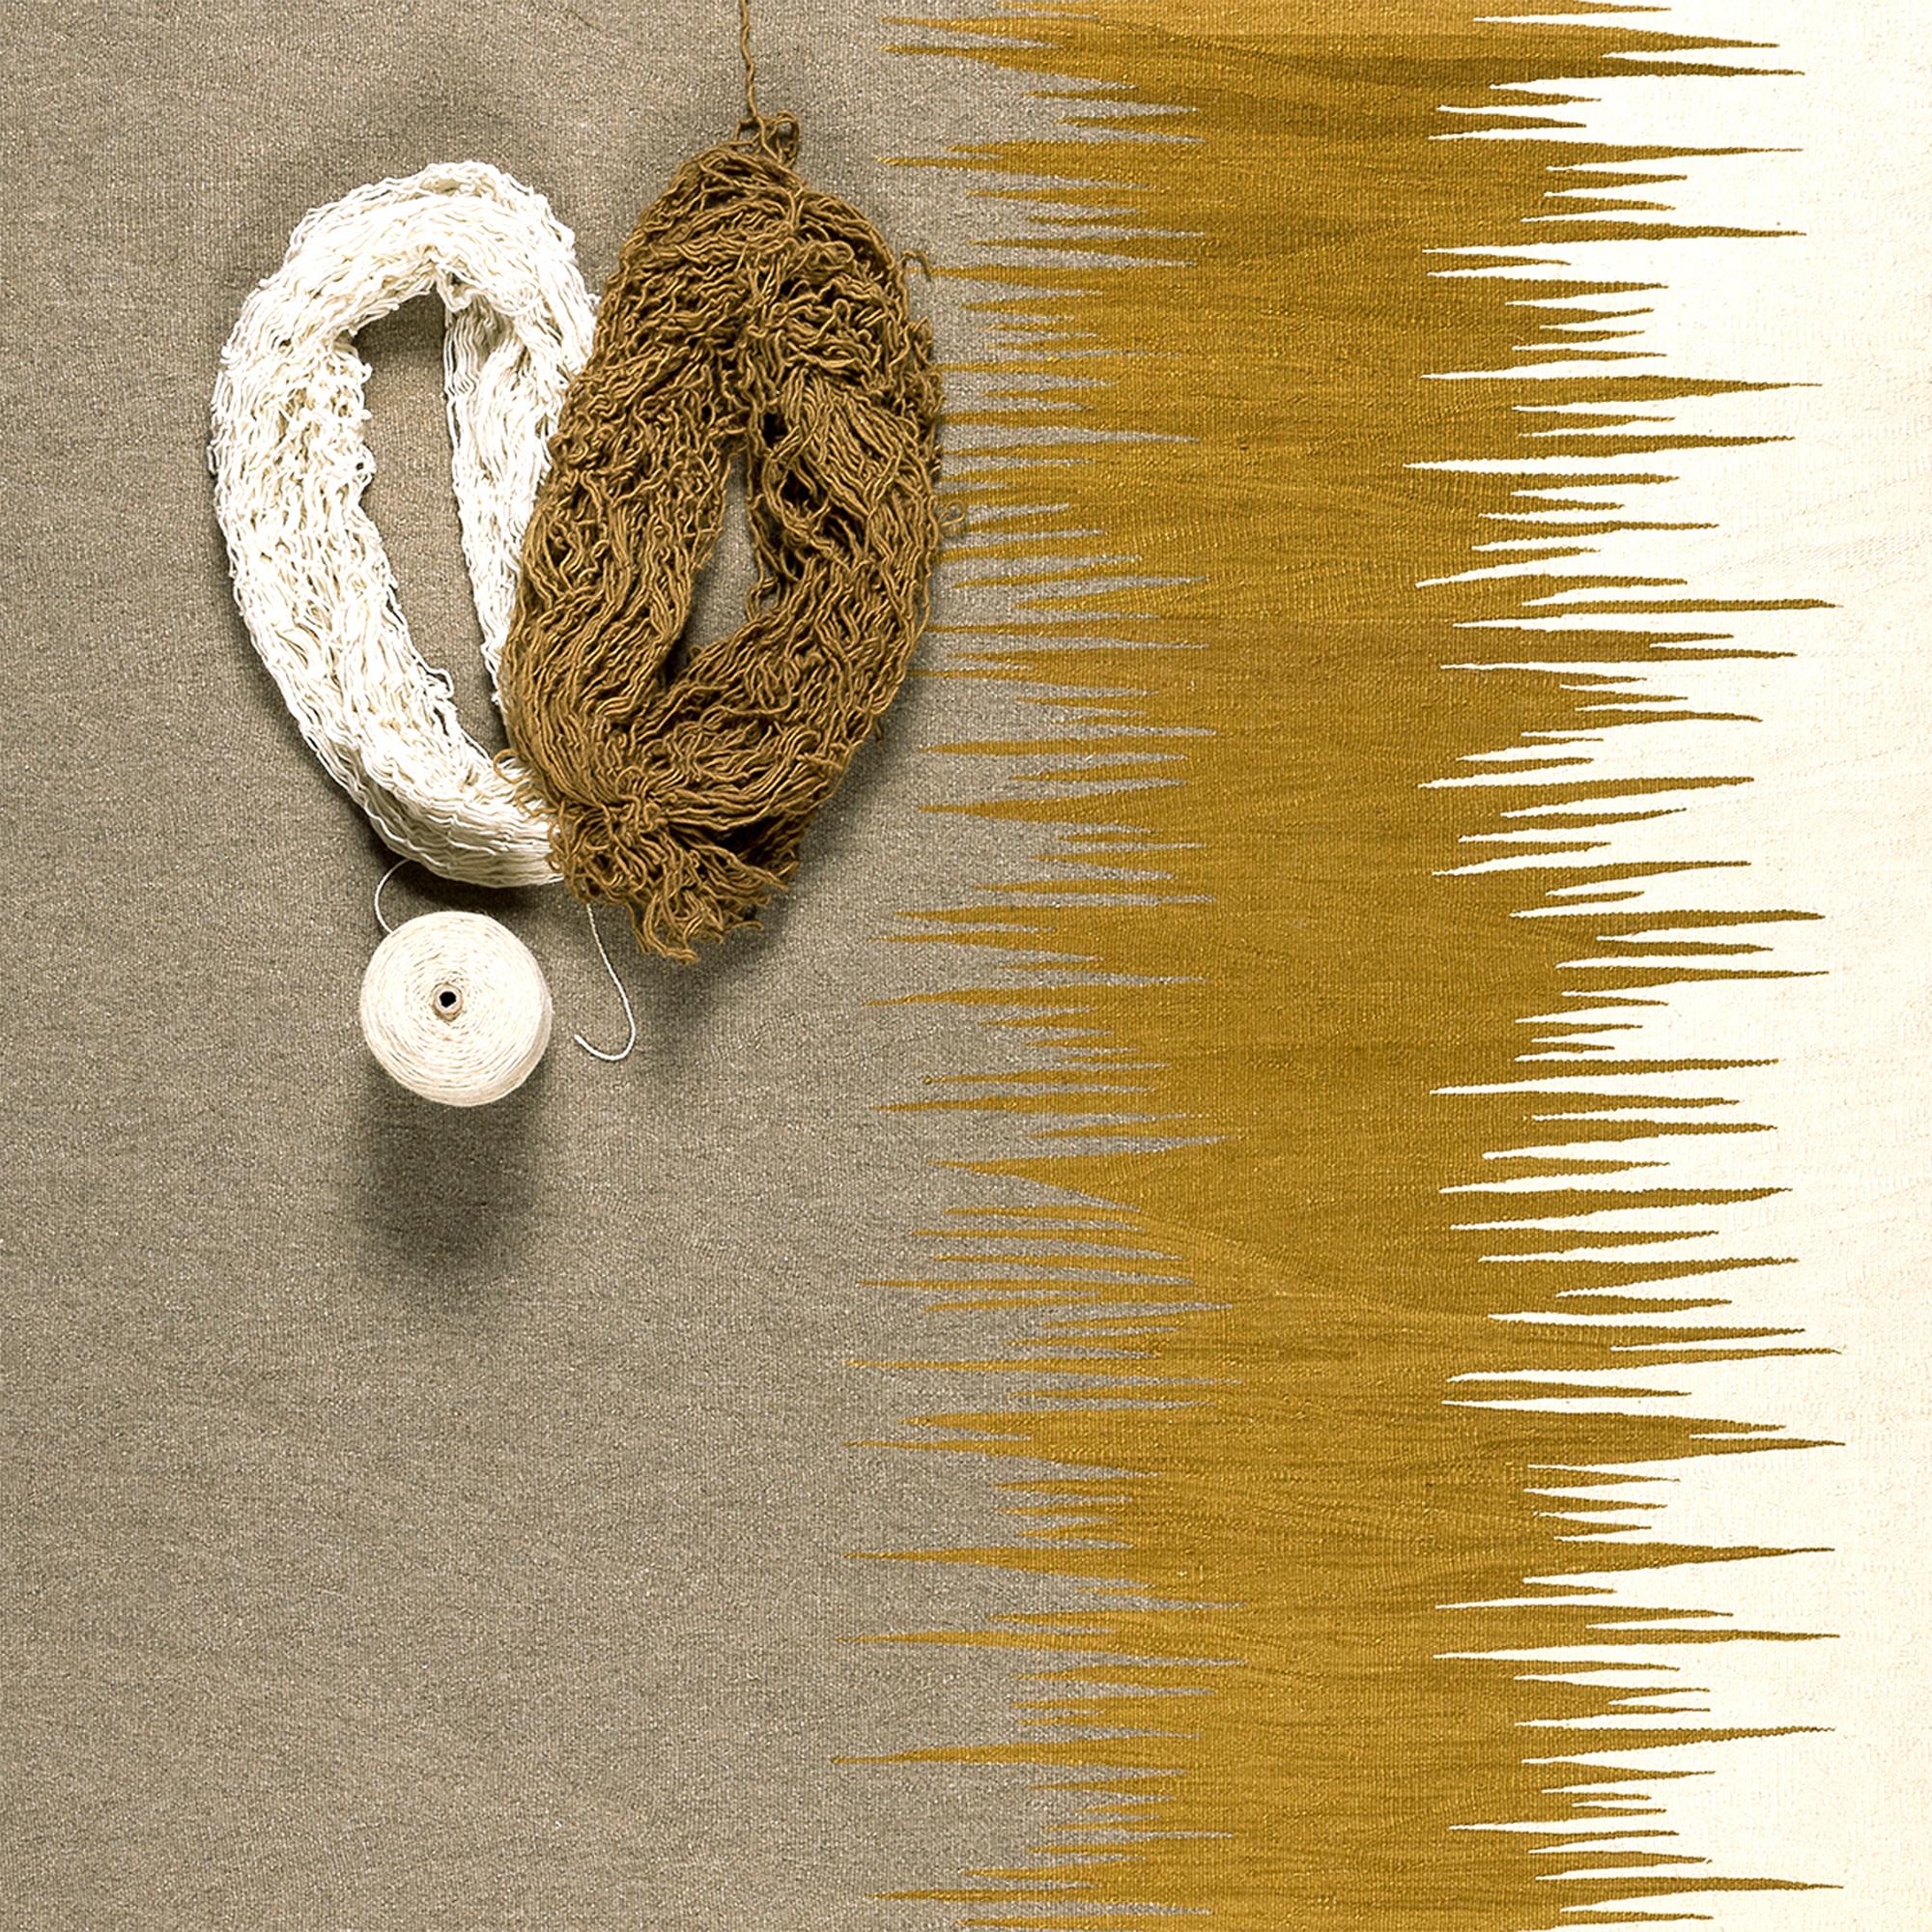 Der Kelimteppich Yakamoz No 3 gehört zu einer Serie von Kelims, die von der Poesie der Lichtreflexe auf der Meeresoberfläche inspiriert sind. Die abstrakten Muster, die an wechselnde Farbübergänge durch reflektiertes Licht erinnern, werden von